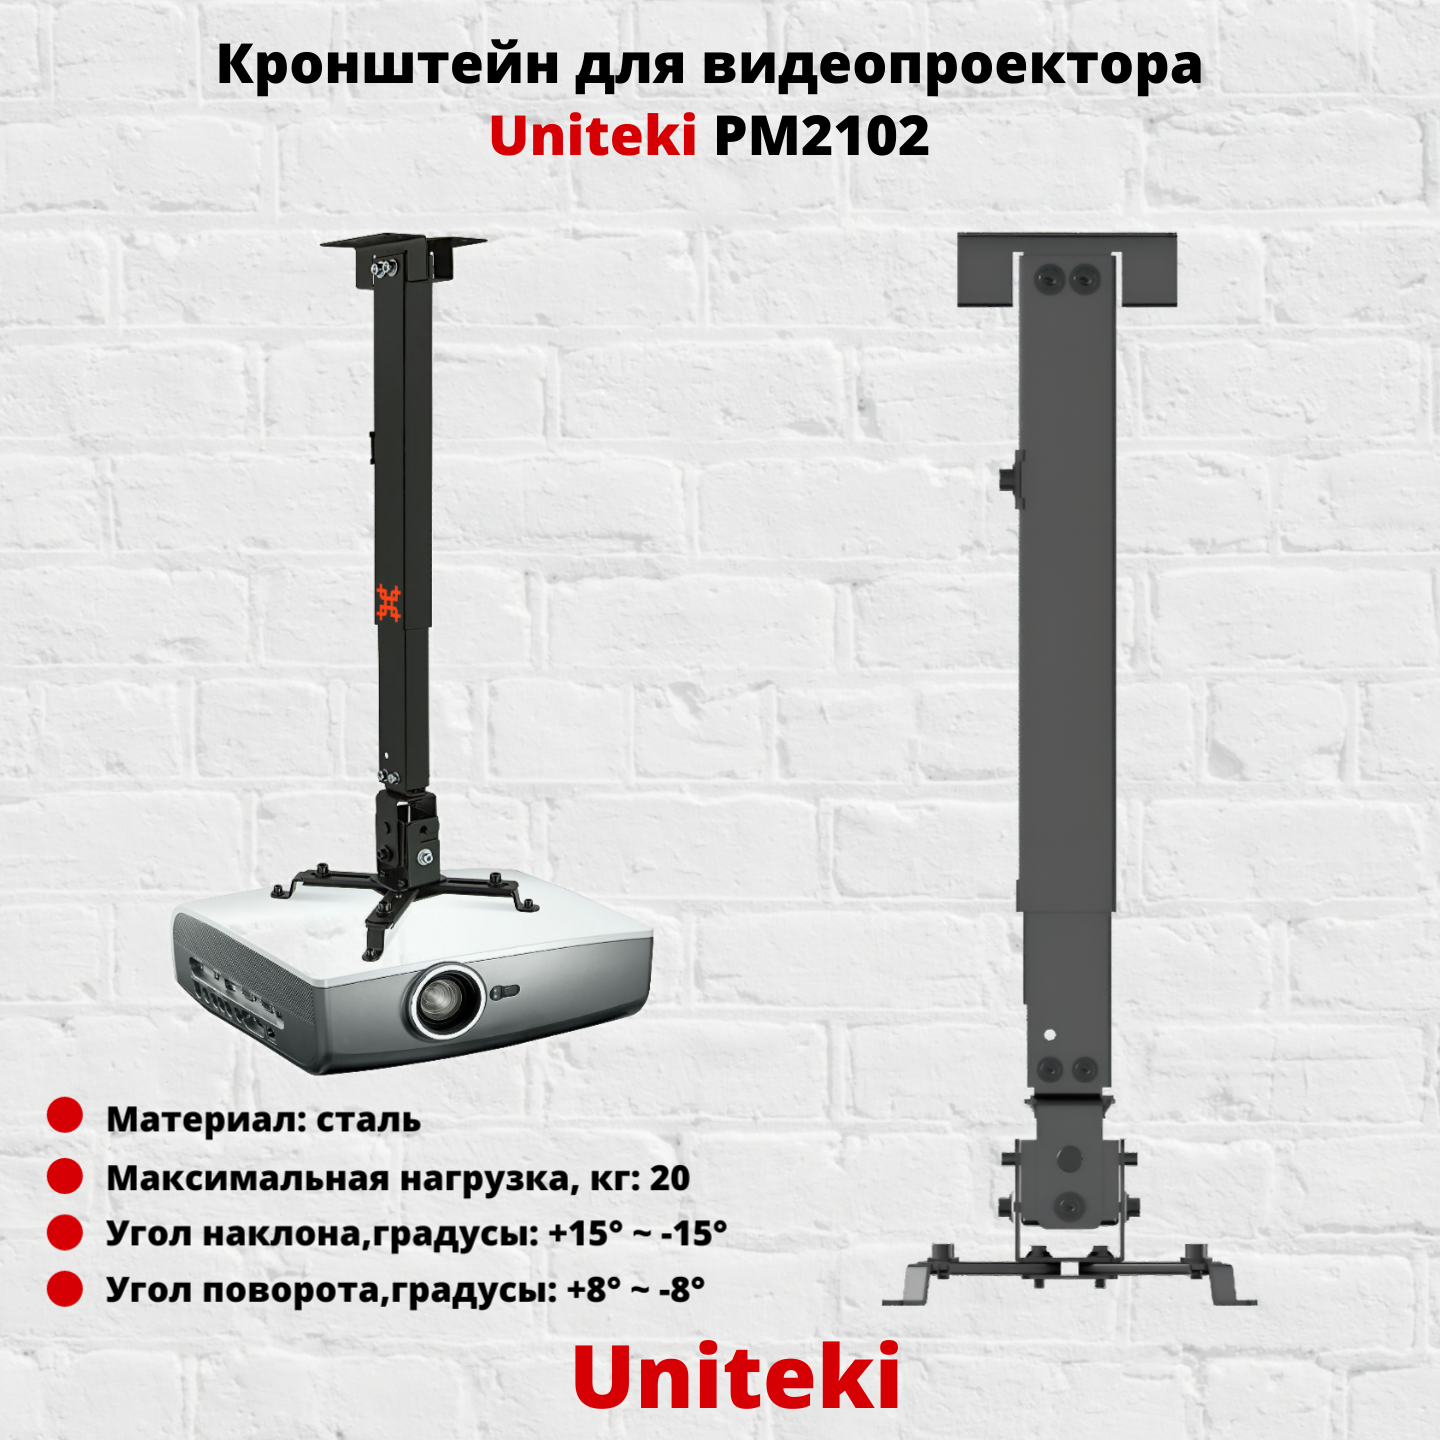 Кронштейн для проектора UniTeki PM2102W белый